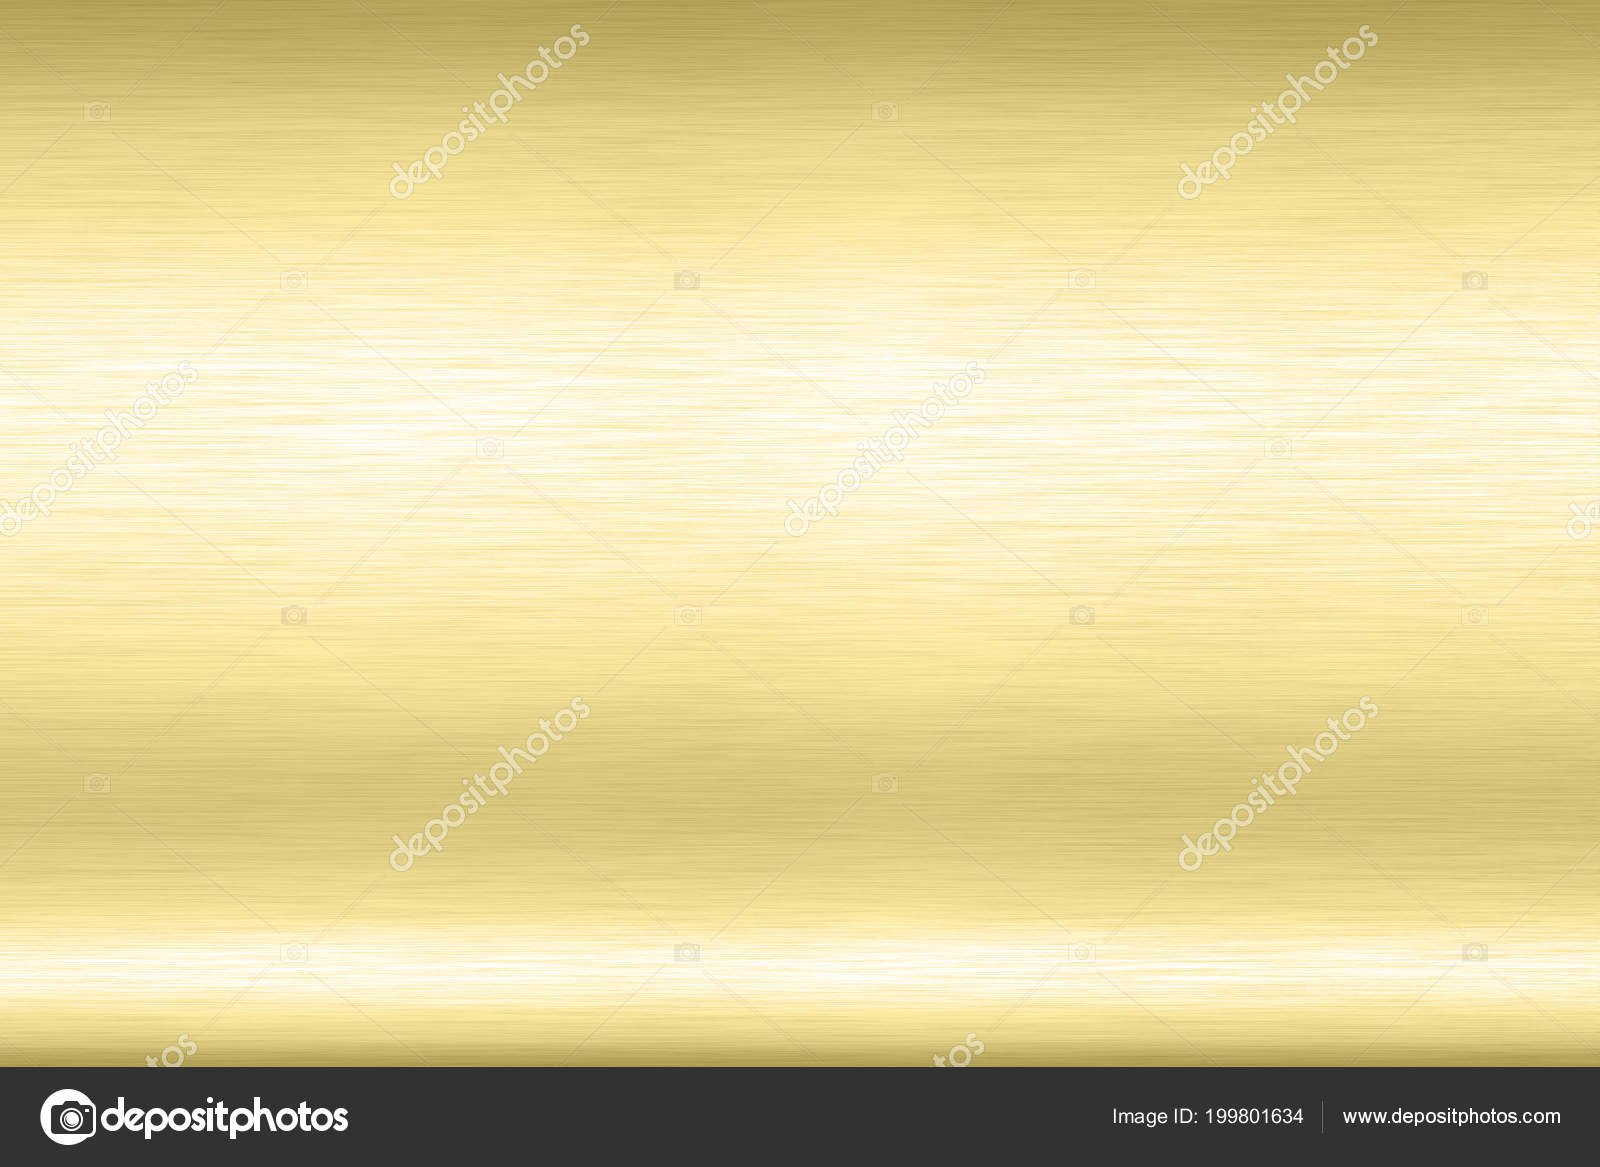 Abstract Shiny smooth foil metal Gold color background Bright vintage Brass  plate chrome element texture concept simple bronze leaf panel hard backdrop  design, light polished steel banner wallpaper. ilustração do Stock